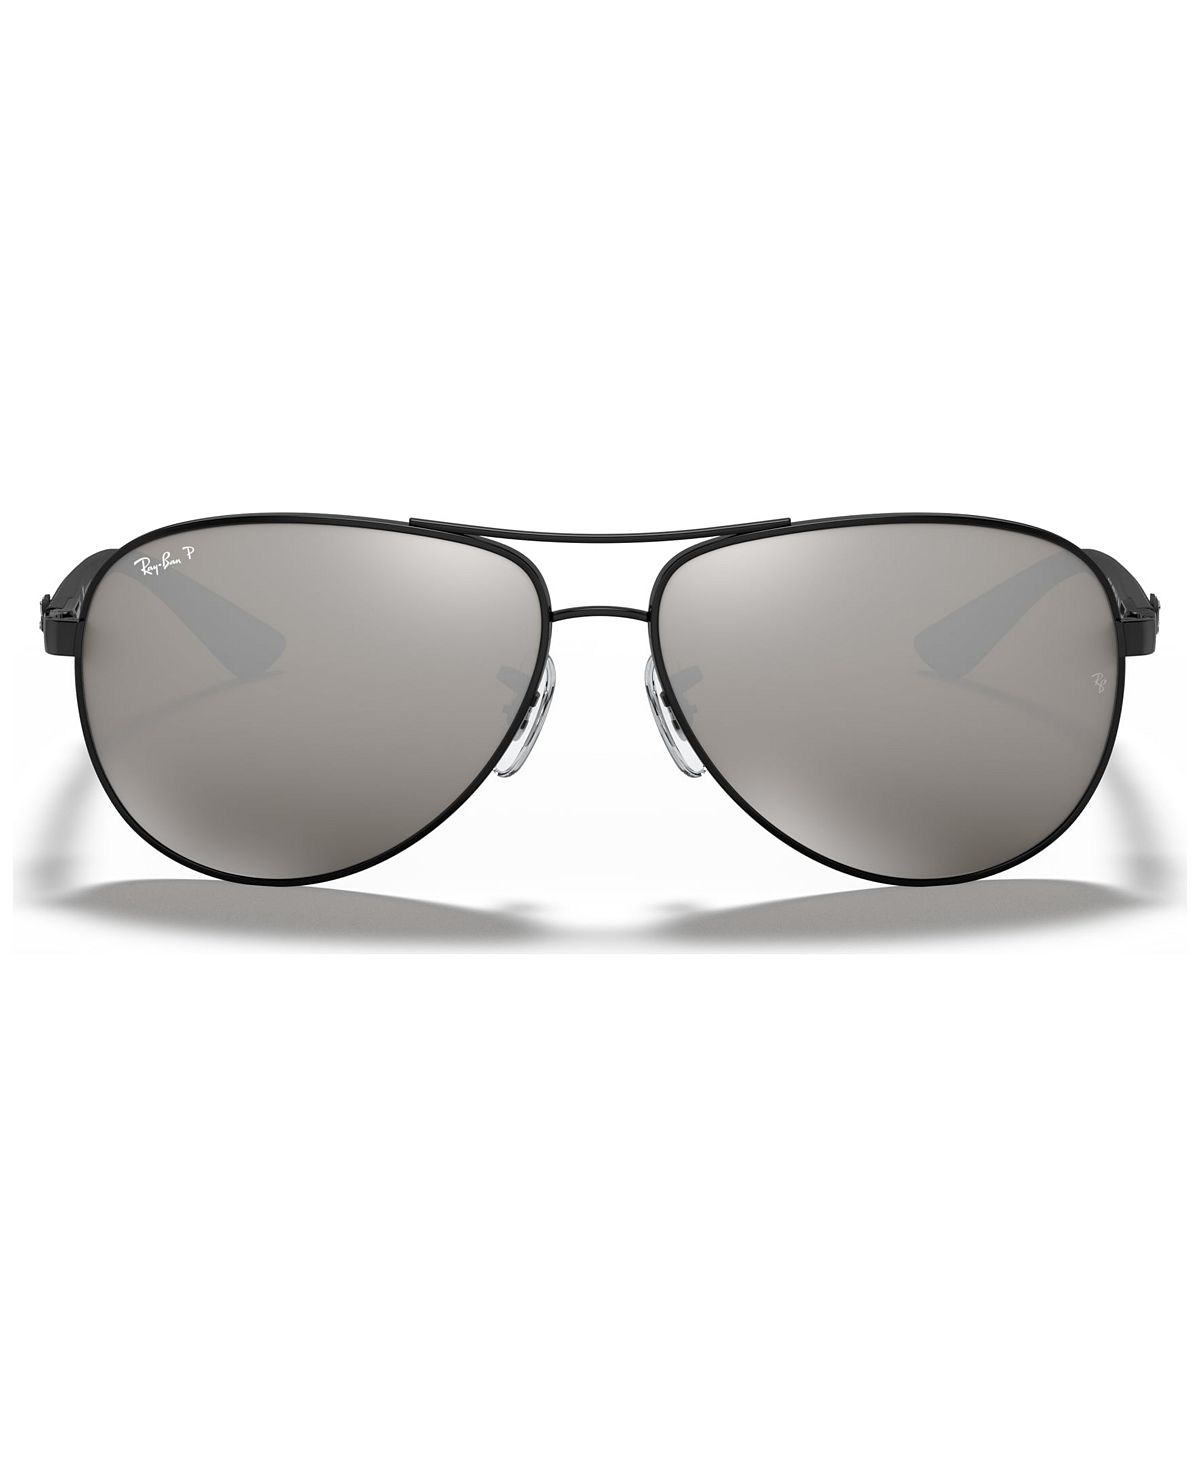 солнцезащитные очки ray ban rb8313 002 k7 61 13 серый Поляризованные солнцезащитные очки, rb8313 Ray-Ban, мульти